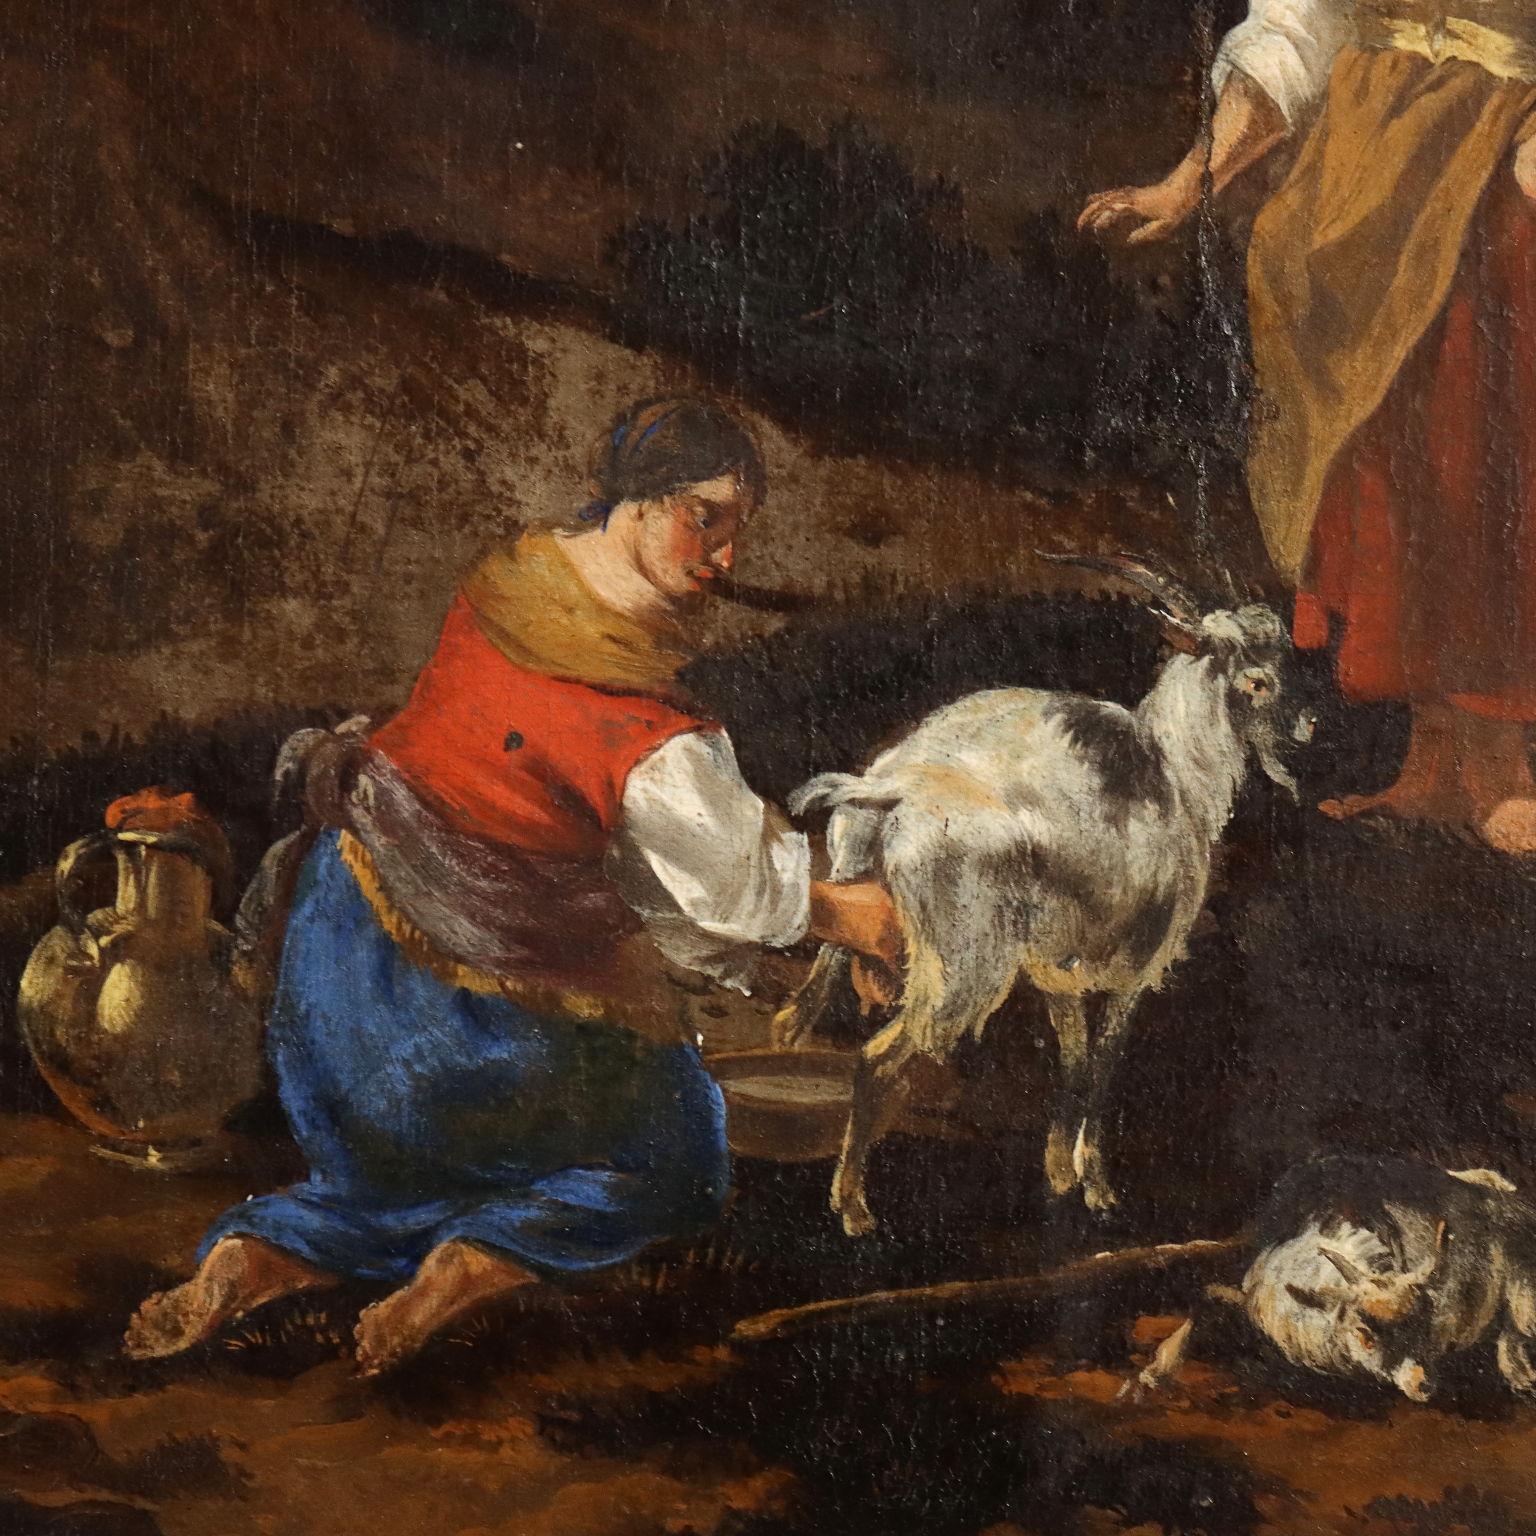 Olio su tela. In basso al centro è visibile un piccolo monogramma JDB.
Il dipinto risulta attribuito a Johannes Van Der Bent, artista fiammingo operante nella seconda metà del XVII secolo, e specialista di paesaggi con scene di vita pastorale,